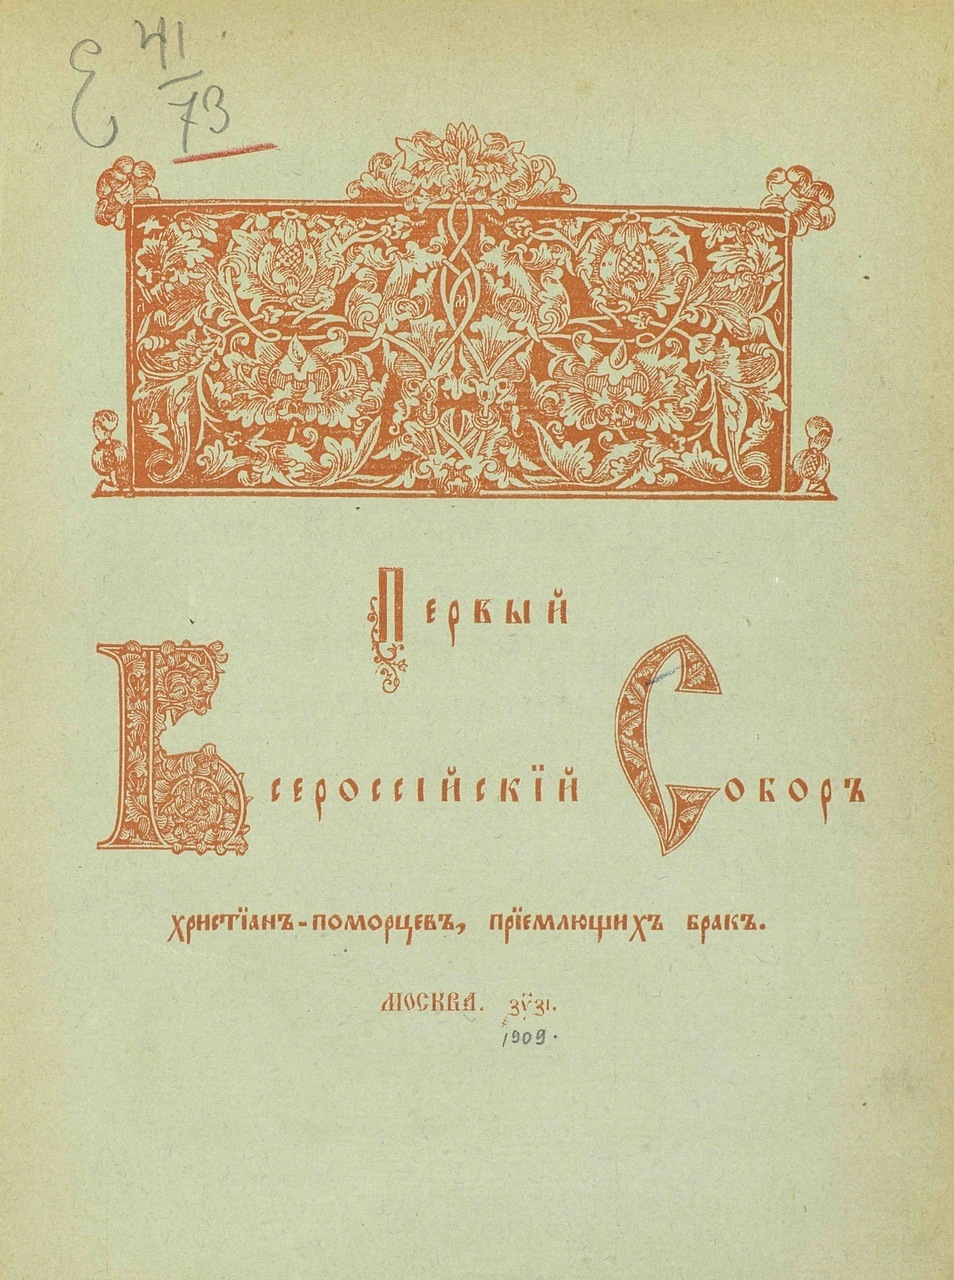 Деяния Первого Всероссийского Собора христиан-поморцев, приемлющих брак, были опубликованы в 1909 году